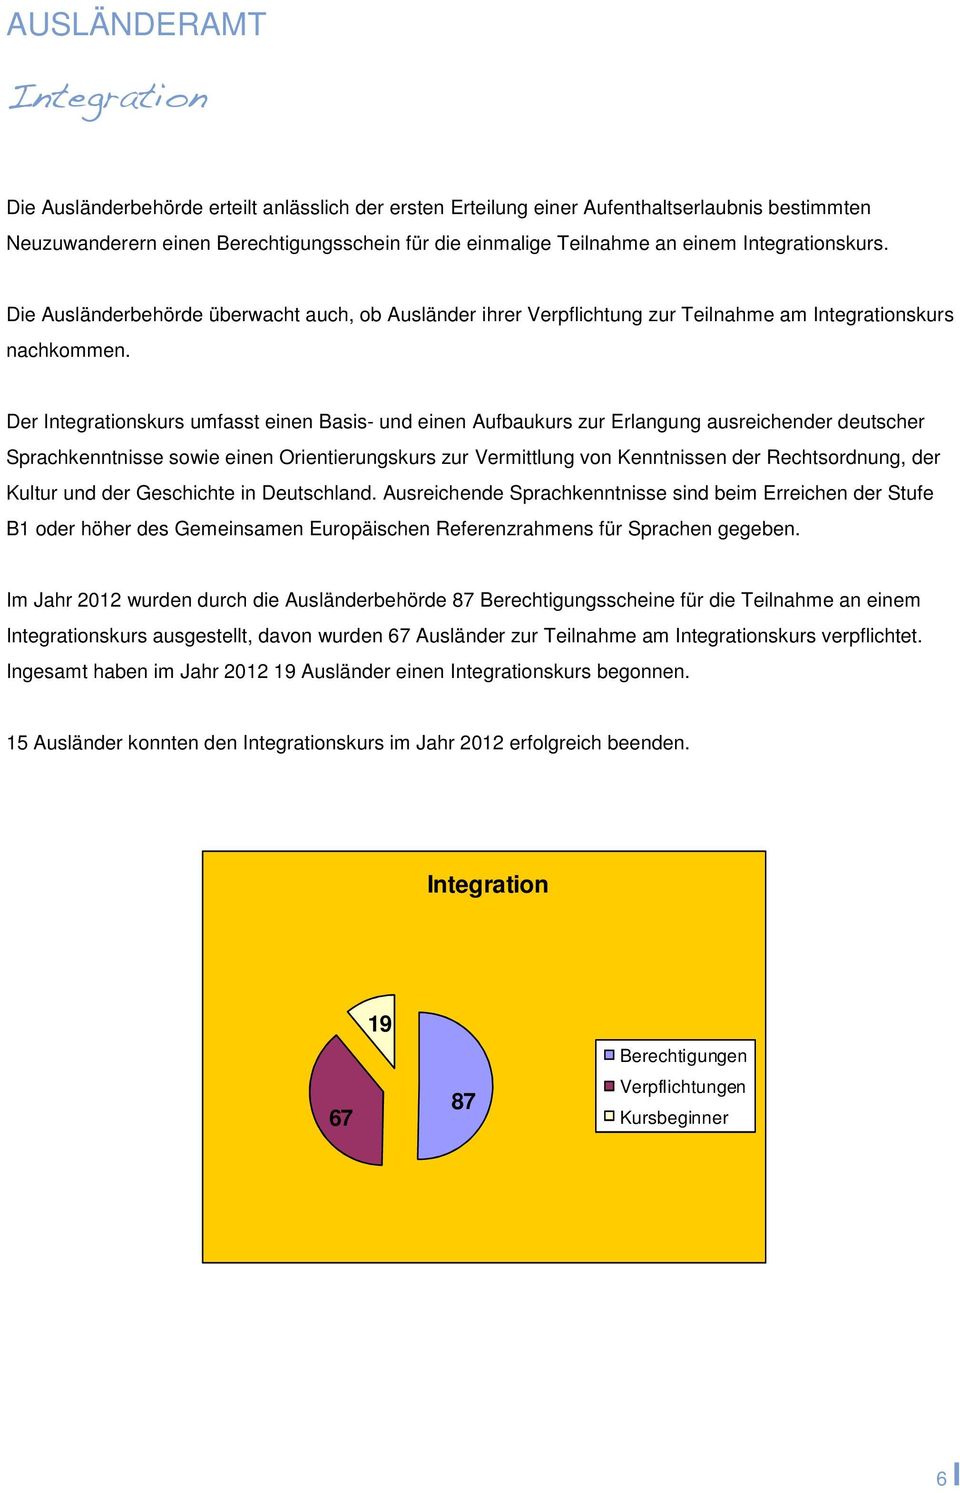 Der Integrationskurs umfasst einen Basis- und einen Aufbaukurs zur Erlangung ausreichender deutscher Sprachkenntnisse sowie einen Orientierungskurs zur Vermittlung von Kenntnissen der Rechtsordnung,